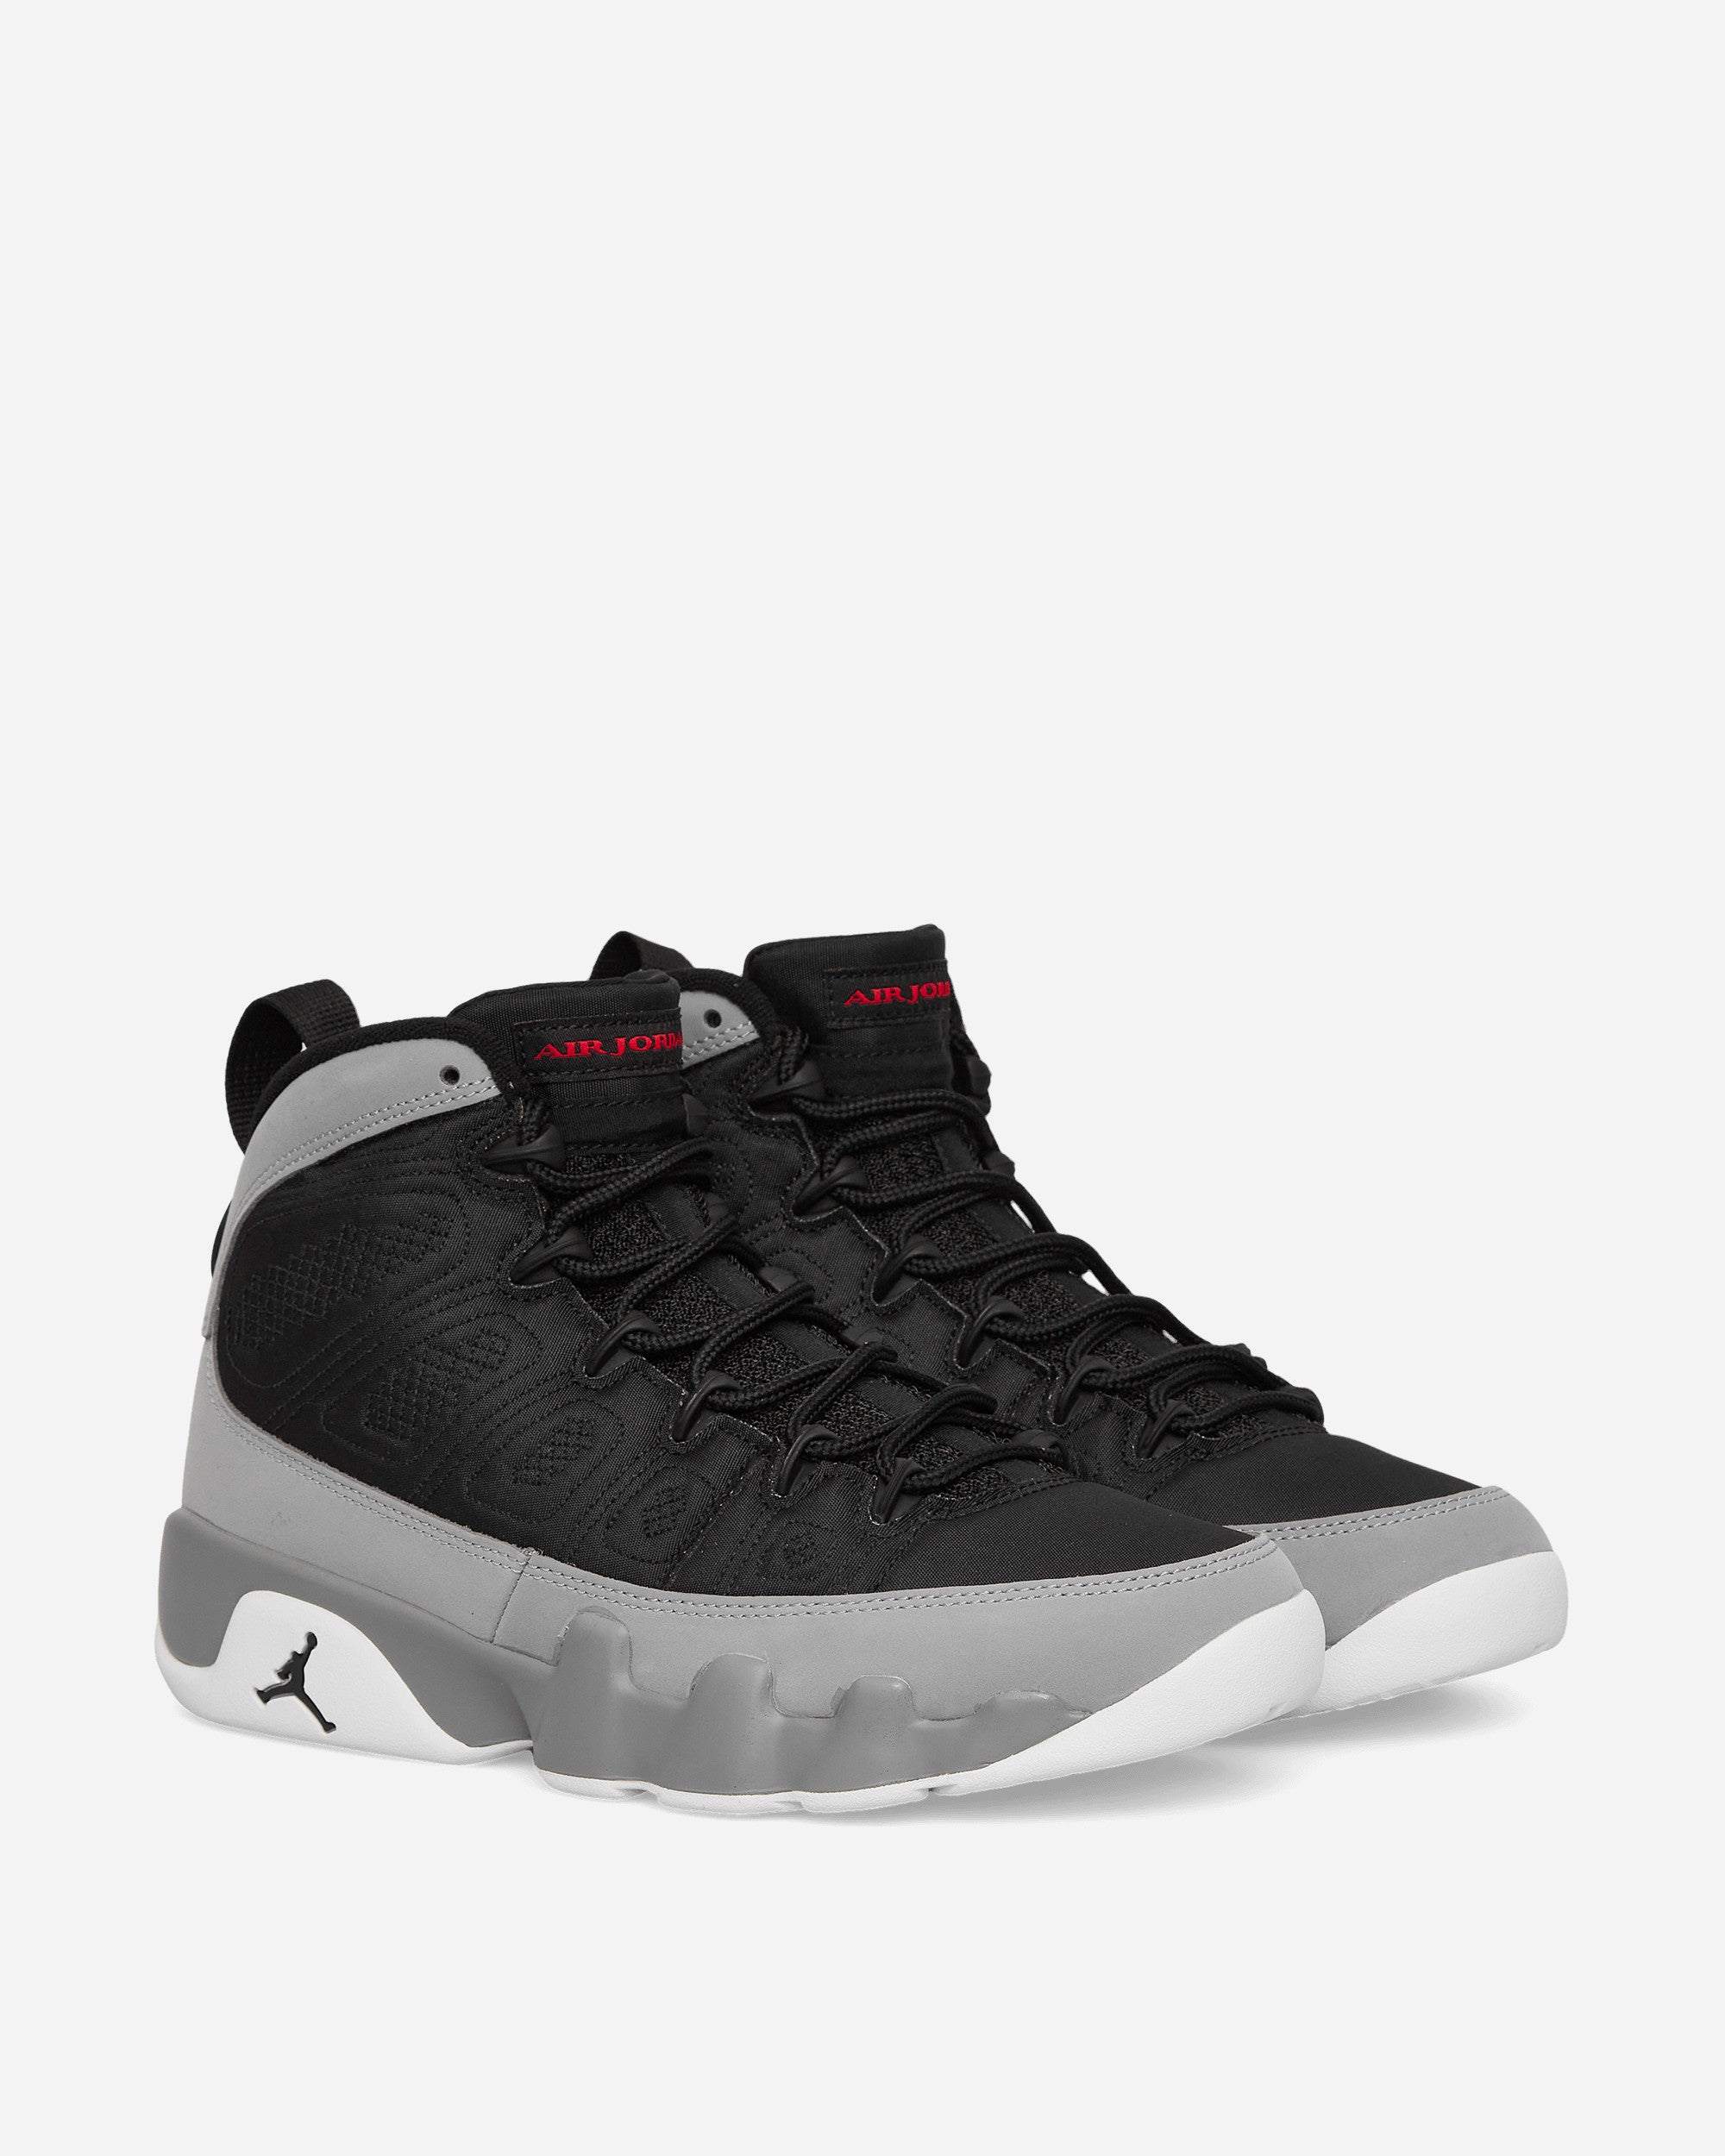 Nike Jordan Air Jordan 9 Retro Black/University Red Sneakers High CT8019-060